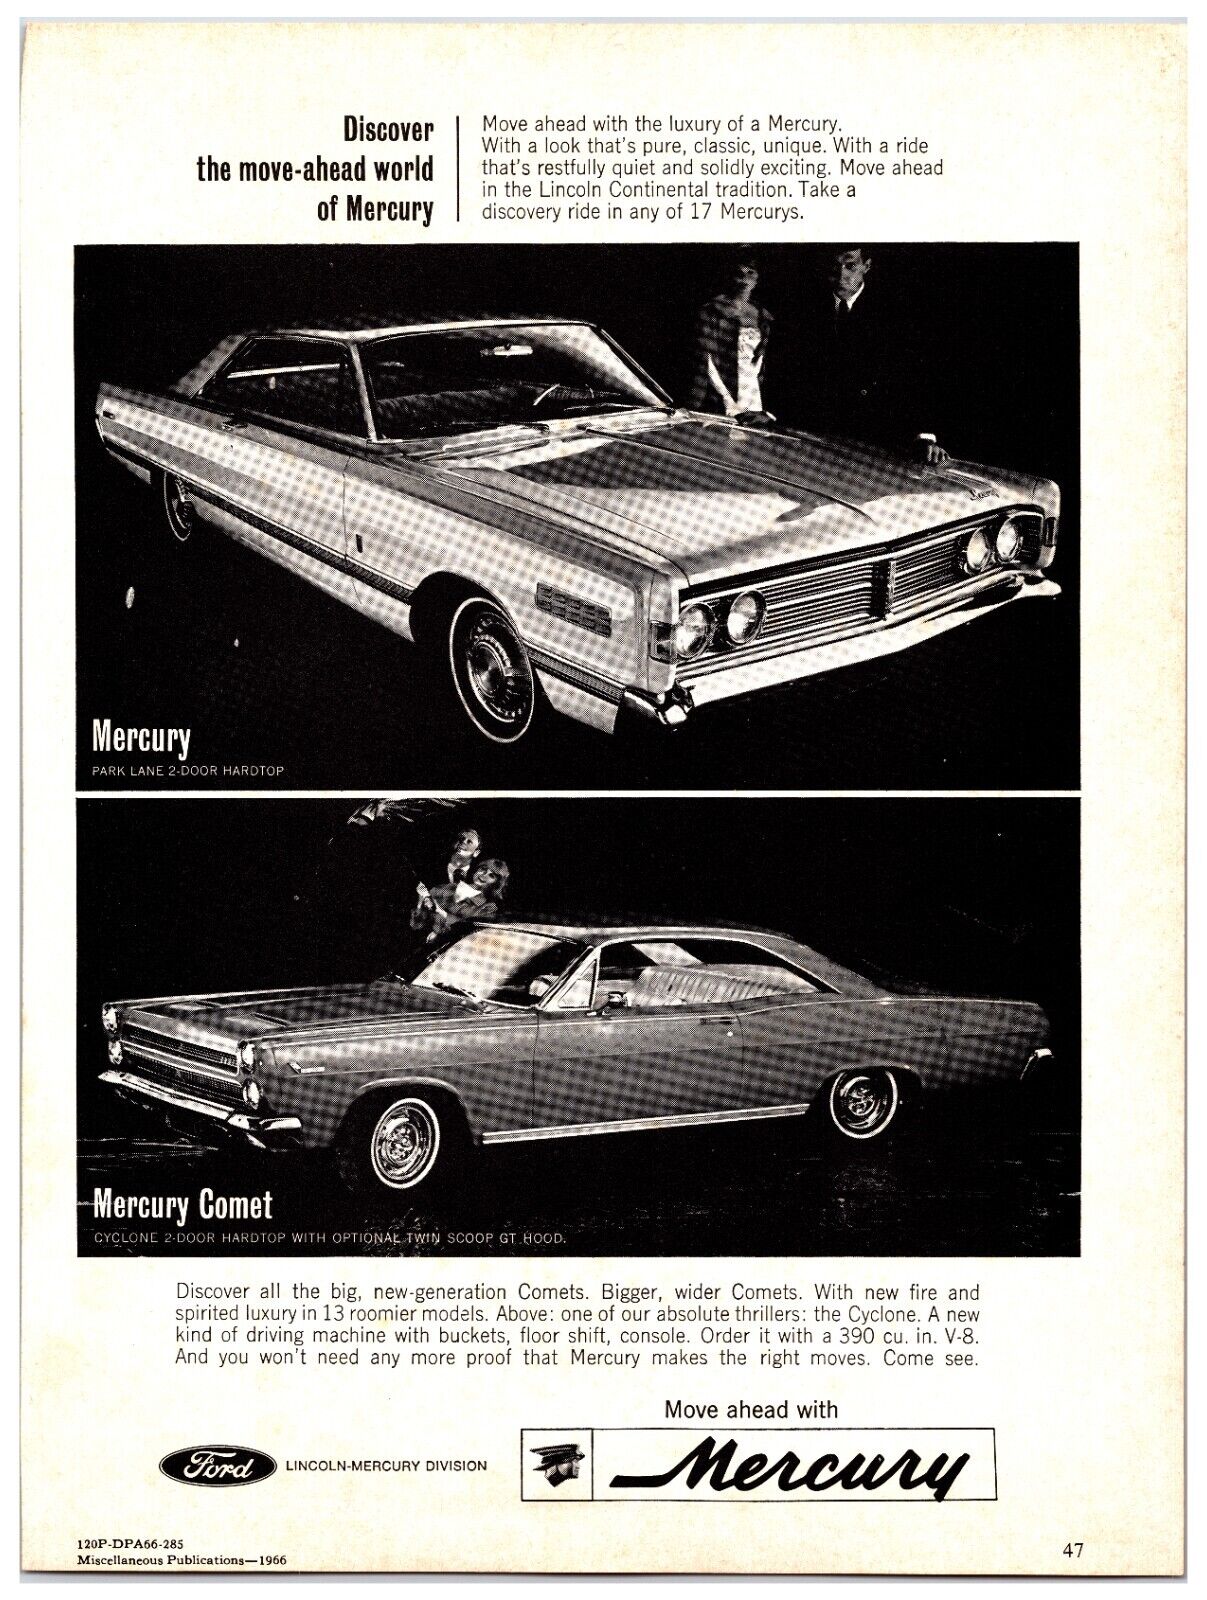 1966 Mercury Cyclone / Park Lane Car - Original Print Advertisement (8in x 11in)